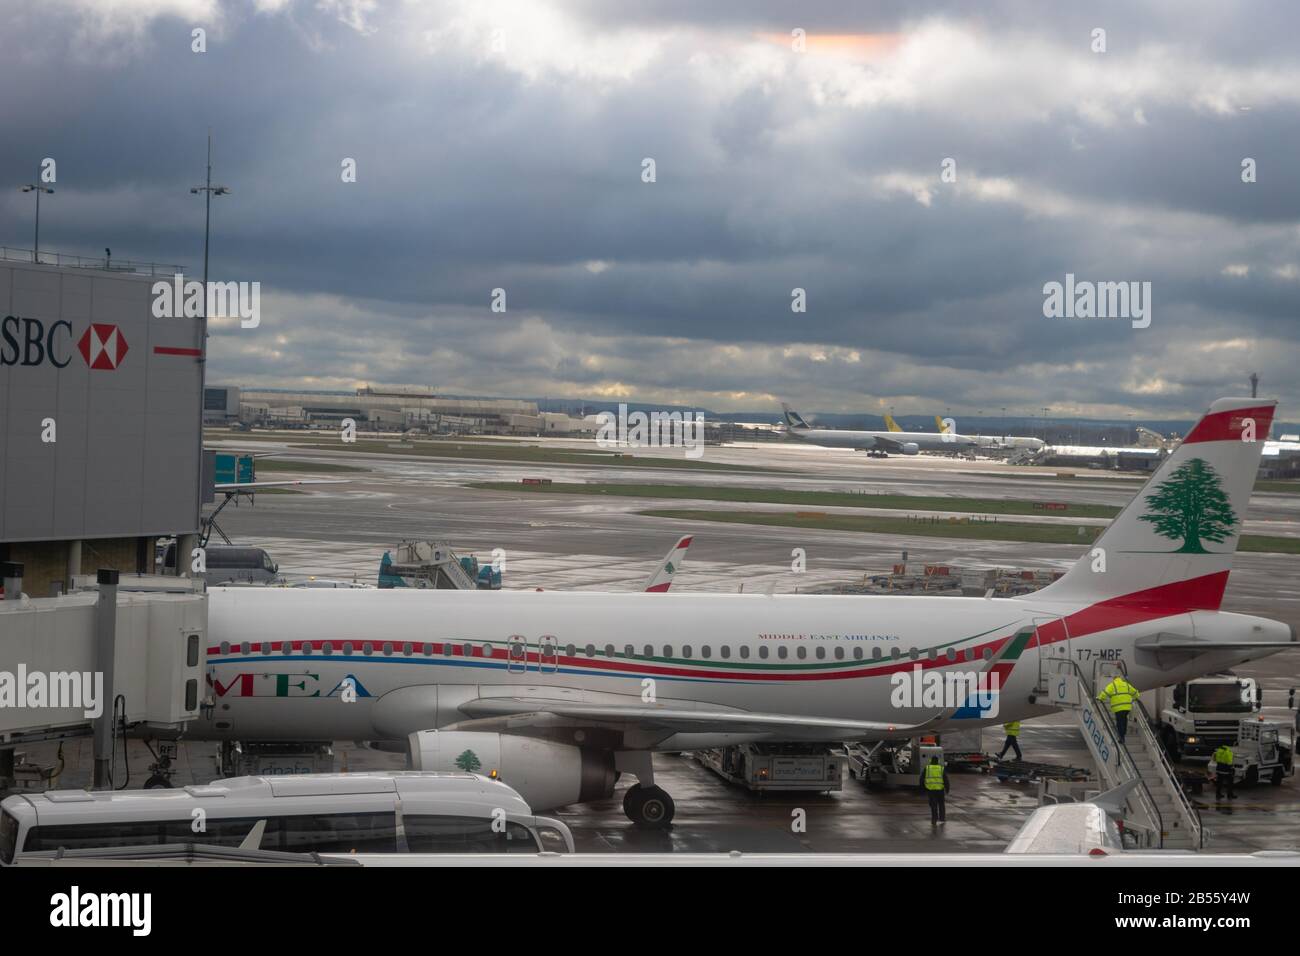 Londra, Regno Unito - Febbraio 2020: Aerei MEA (Middle East Airlines) sulla pista dell'aeroporto di Londra Heathrow. Foto Stock